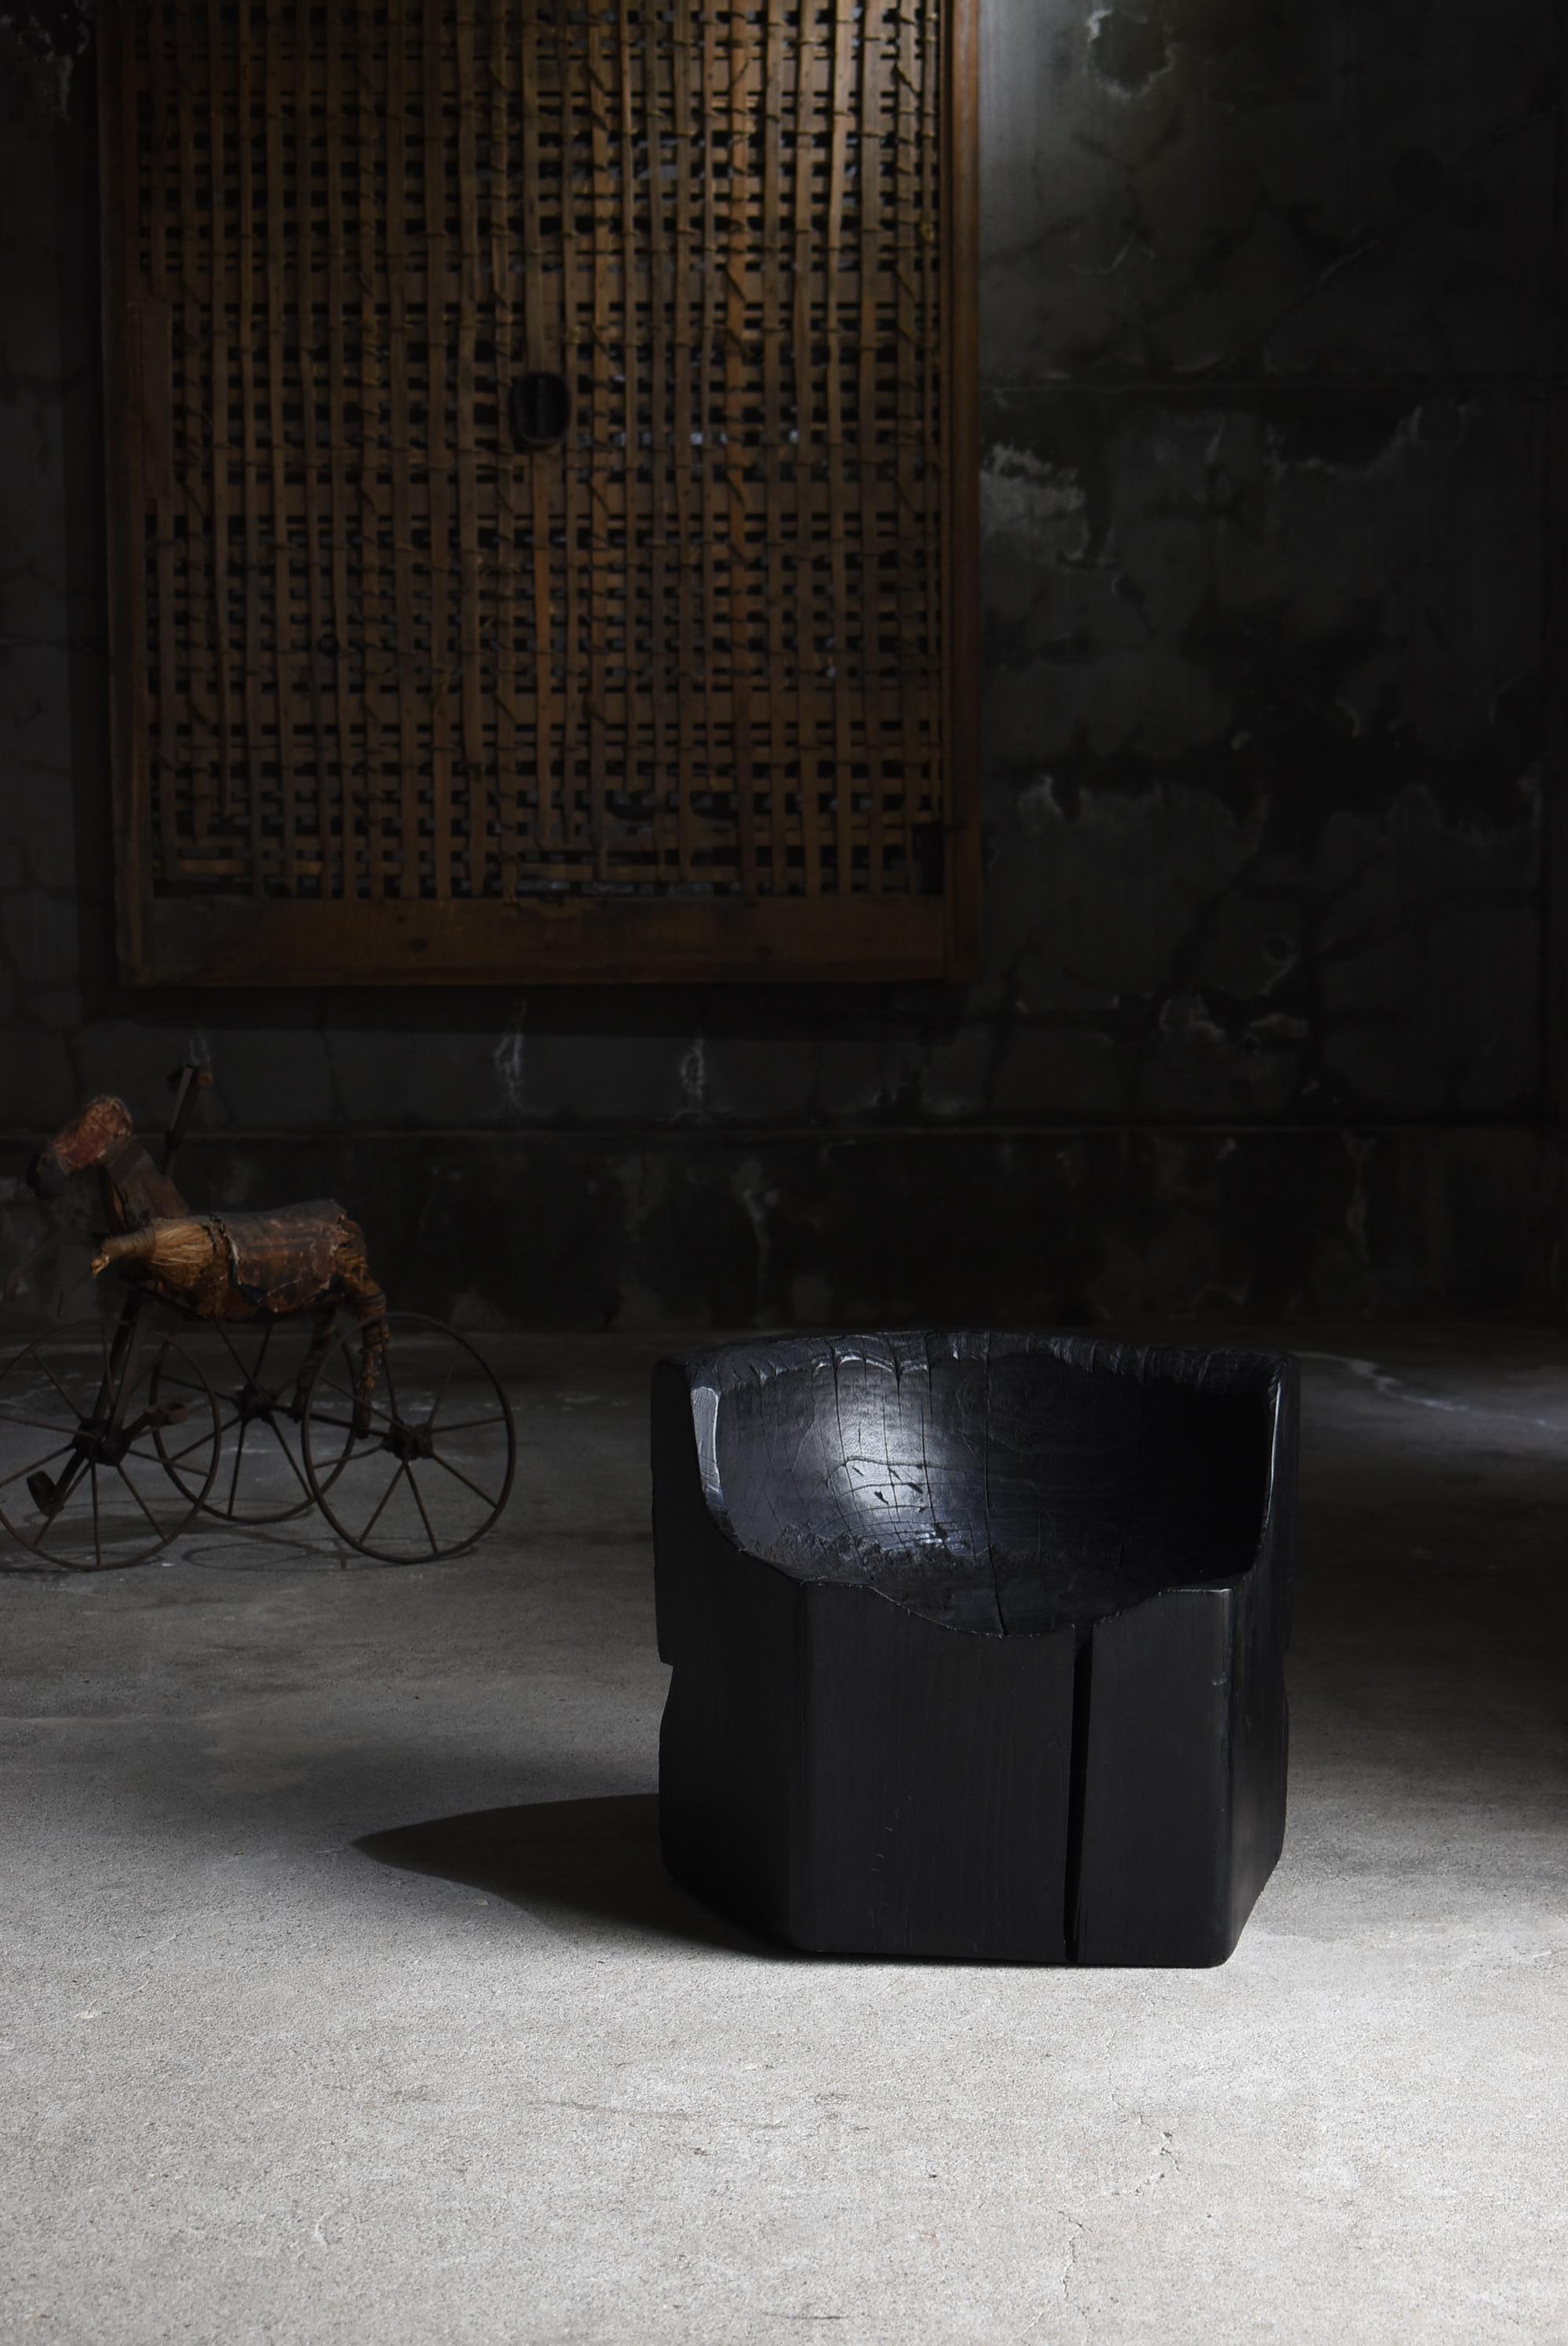 Il s'agit d'une très ancienne chaise primitive fabriquée au Japon.
Le mobilier date de la période Meiji (1860-1900).
Le matériau utilisé est le zelkova.

Il est sculpté dans un seul grand arbre de zelkova.
Il dégage une impression de dynamisme et de